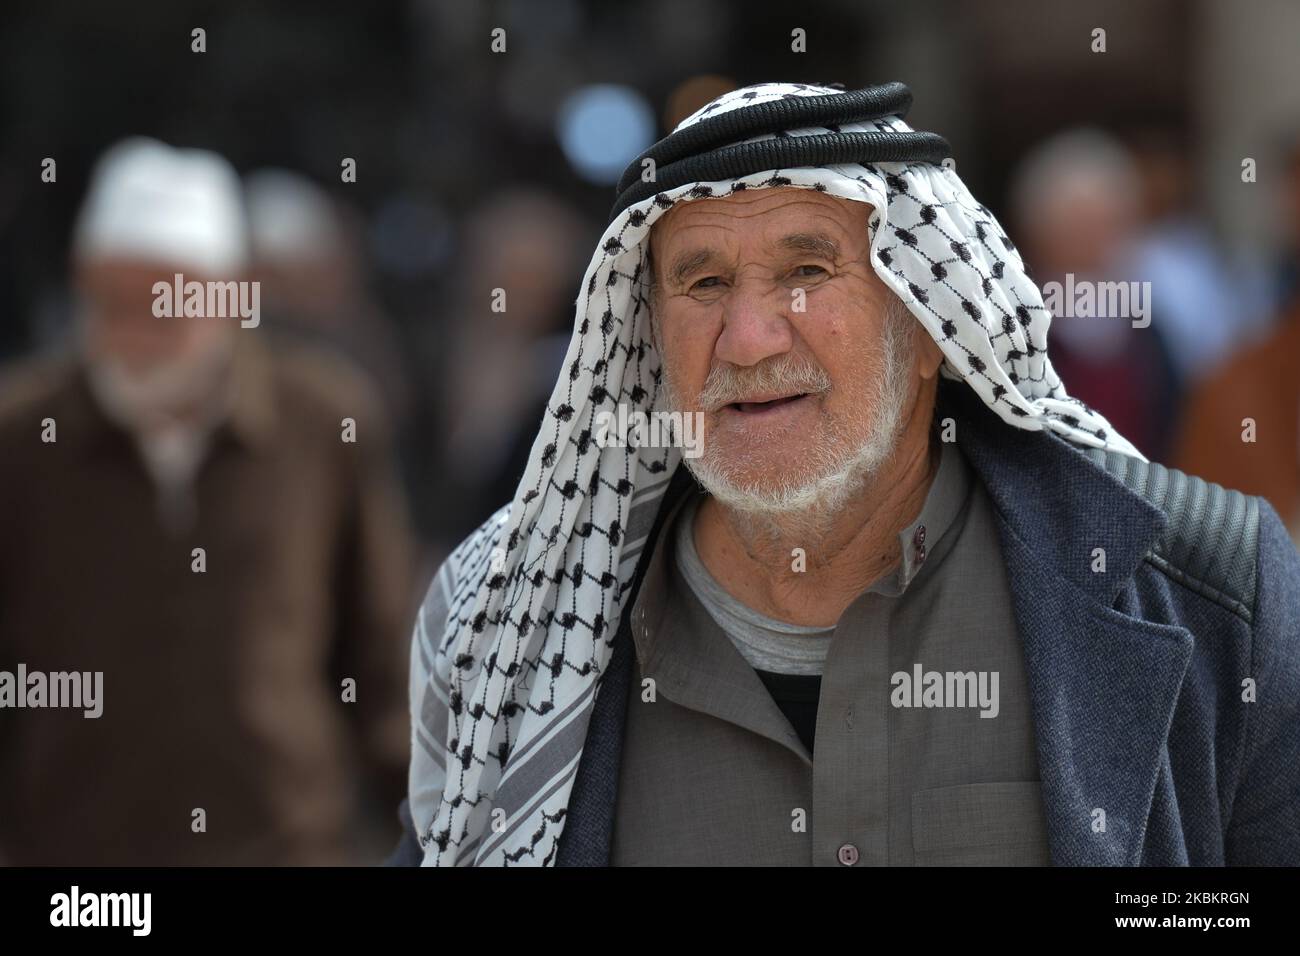 Palestinian man wearing keffiyeh israeli hi-res stock photography